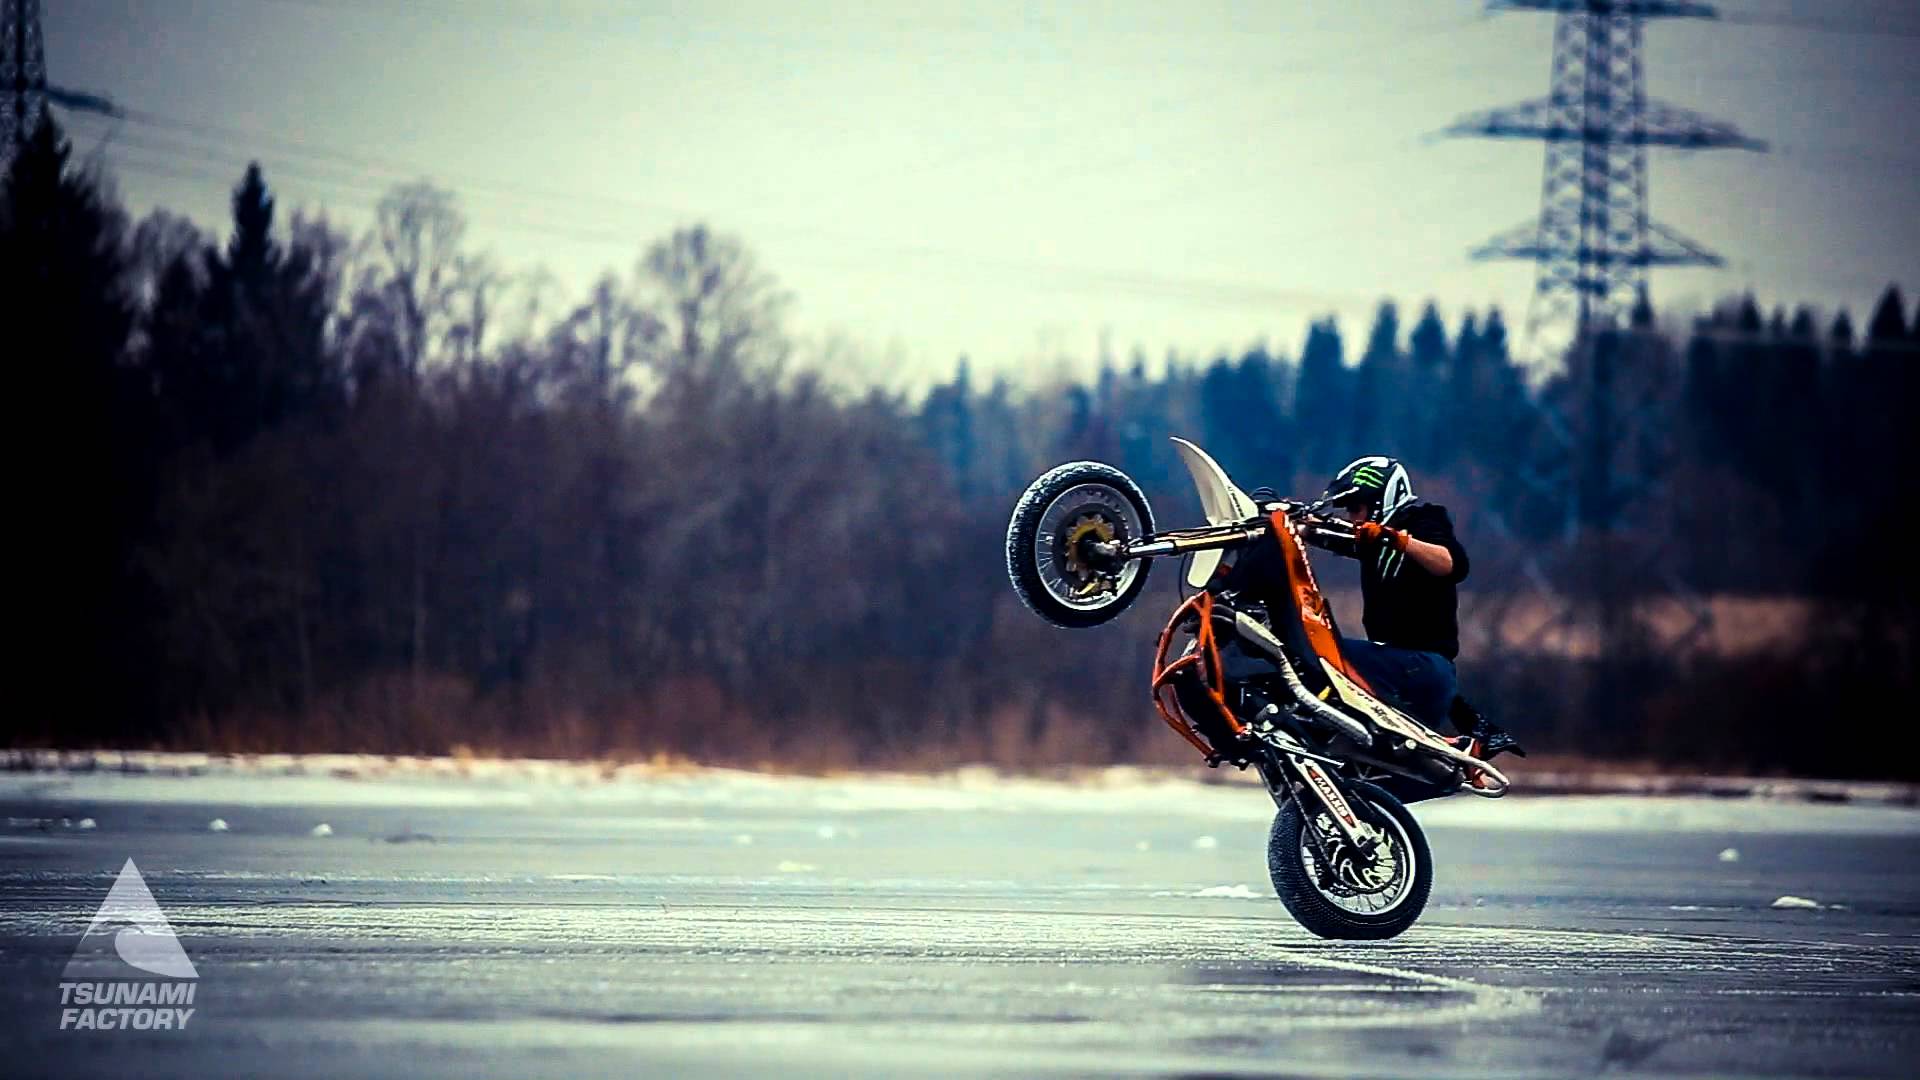 Winter Crazy Stunt on Ice